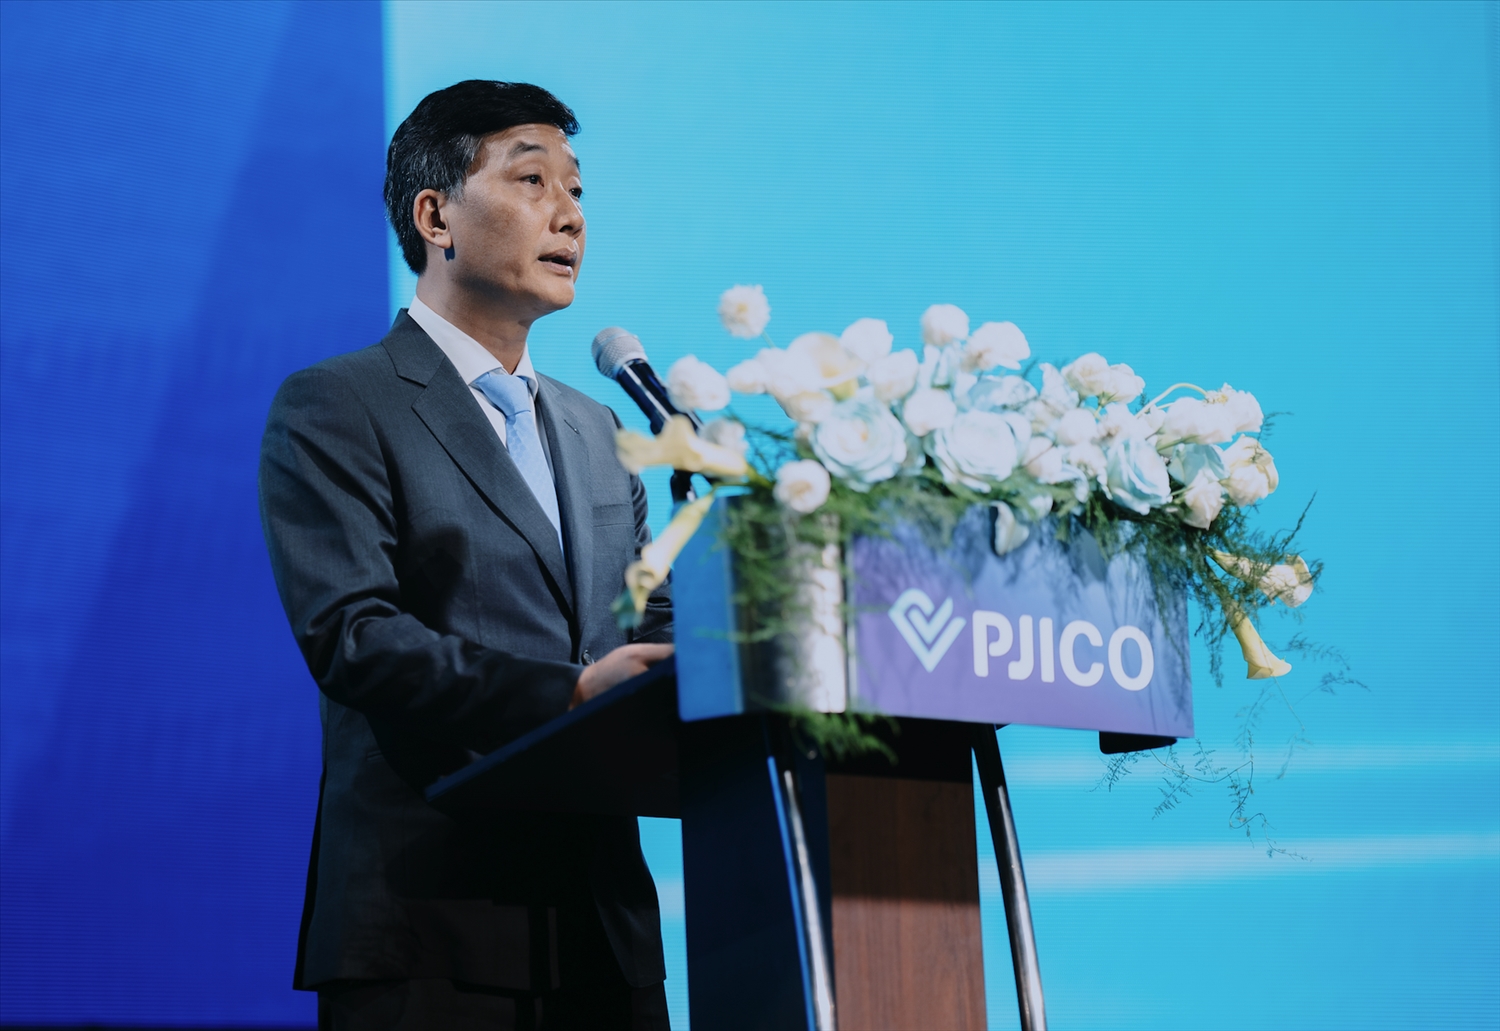 Ông Phạm Thanh Hải, Chủ tịch HĐQT PJICO cho biết: Với thông điệp “Phụng sự từ tâm”, bộ nhận diện thương hiệu mới chính là tấm gương phản chiếu triết lý phát triển của PJICO. 